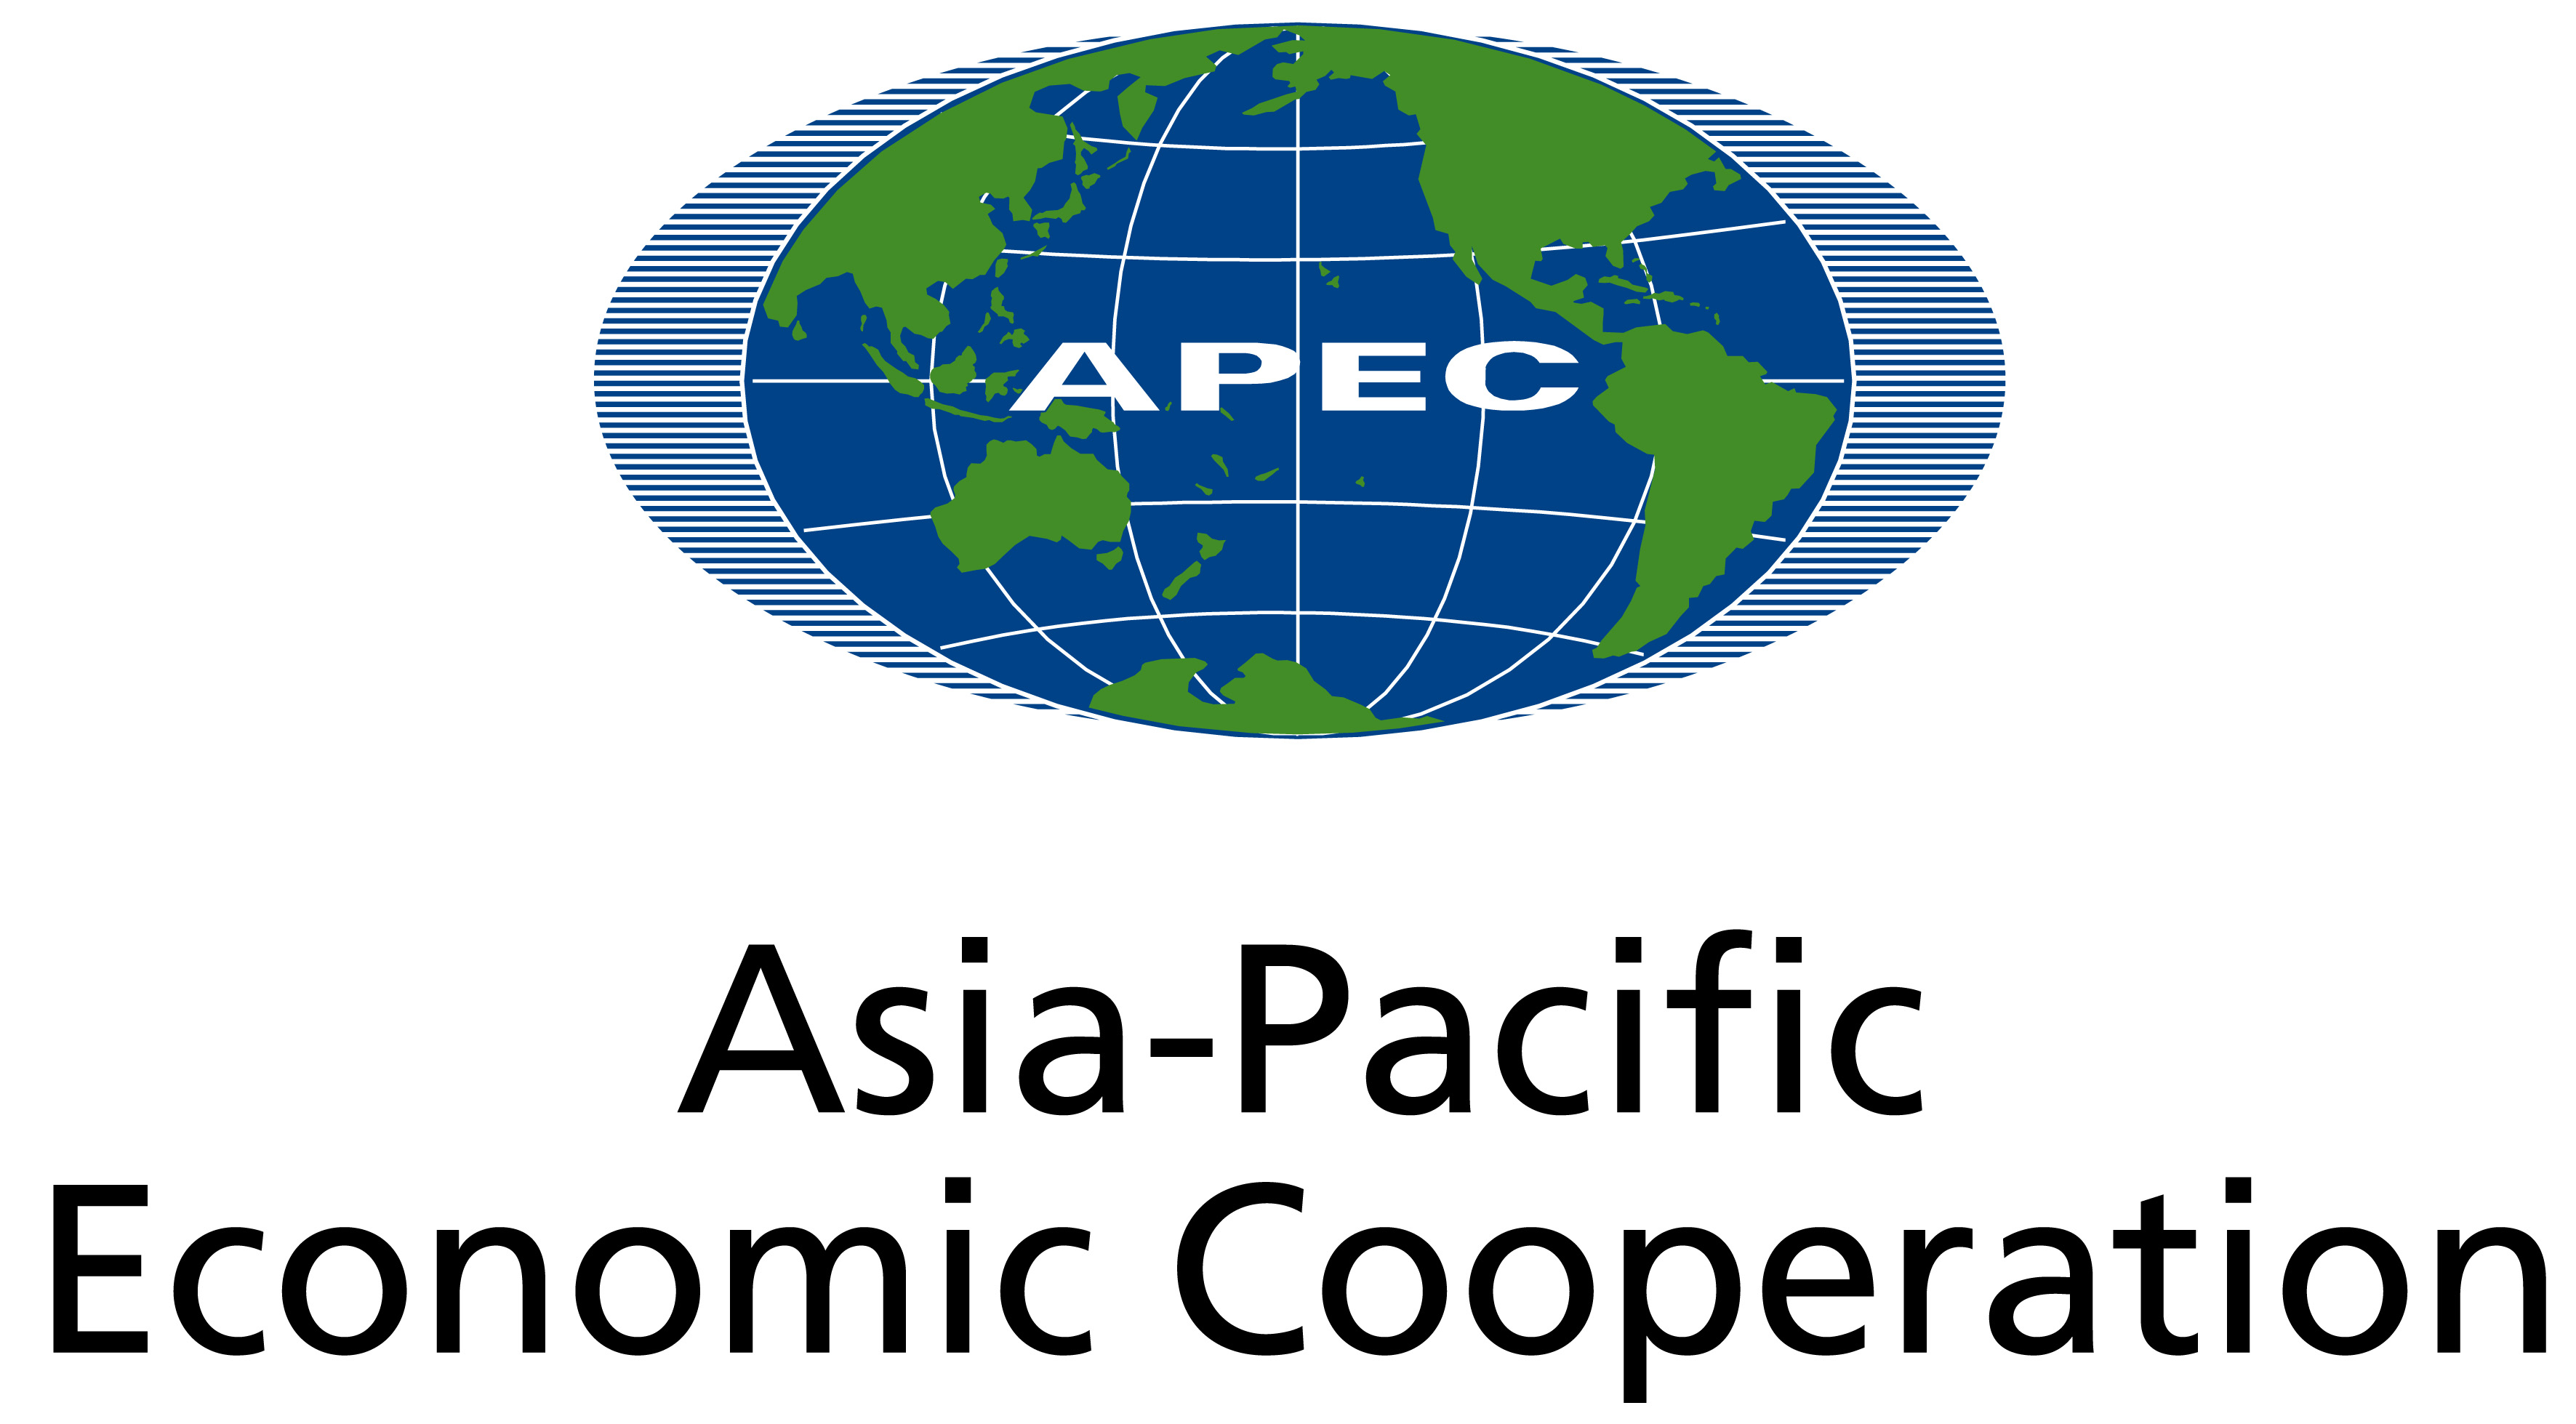 Реферат: Азиатско-Тихоокеанское сотрудничество